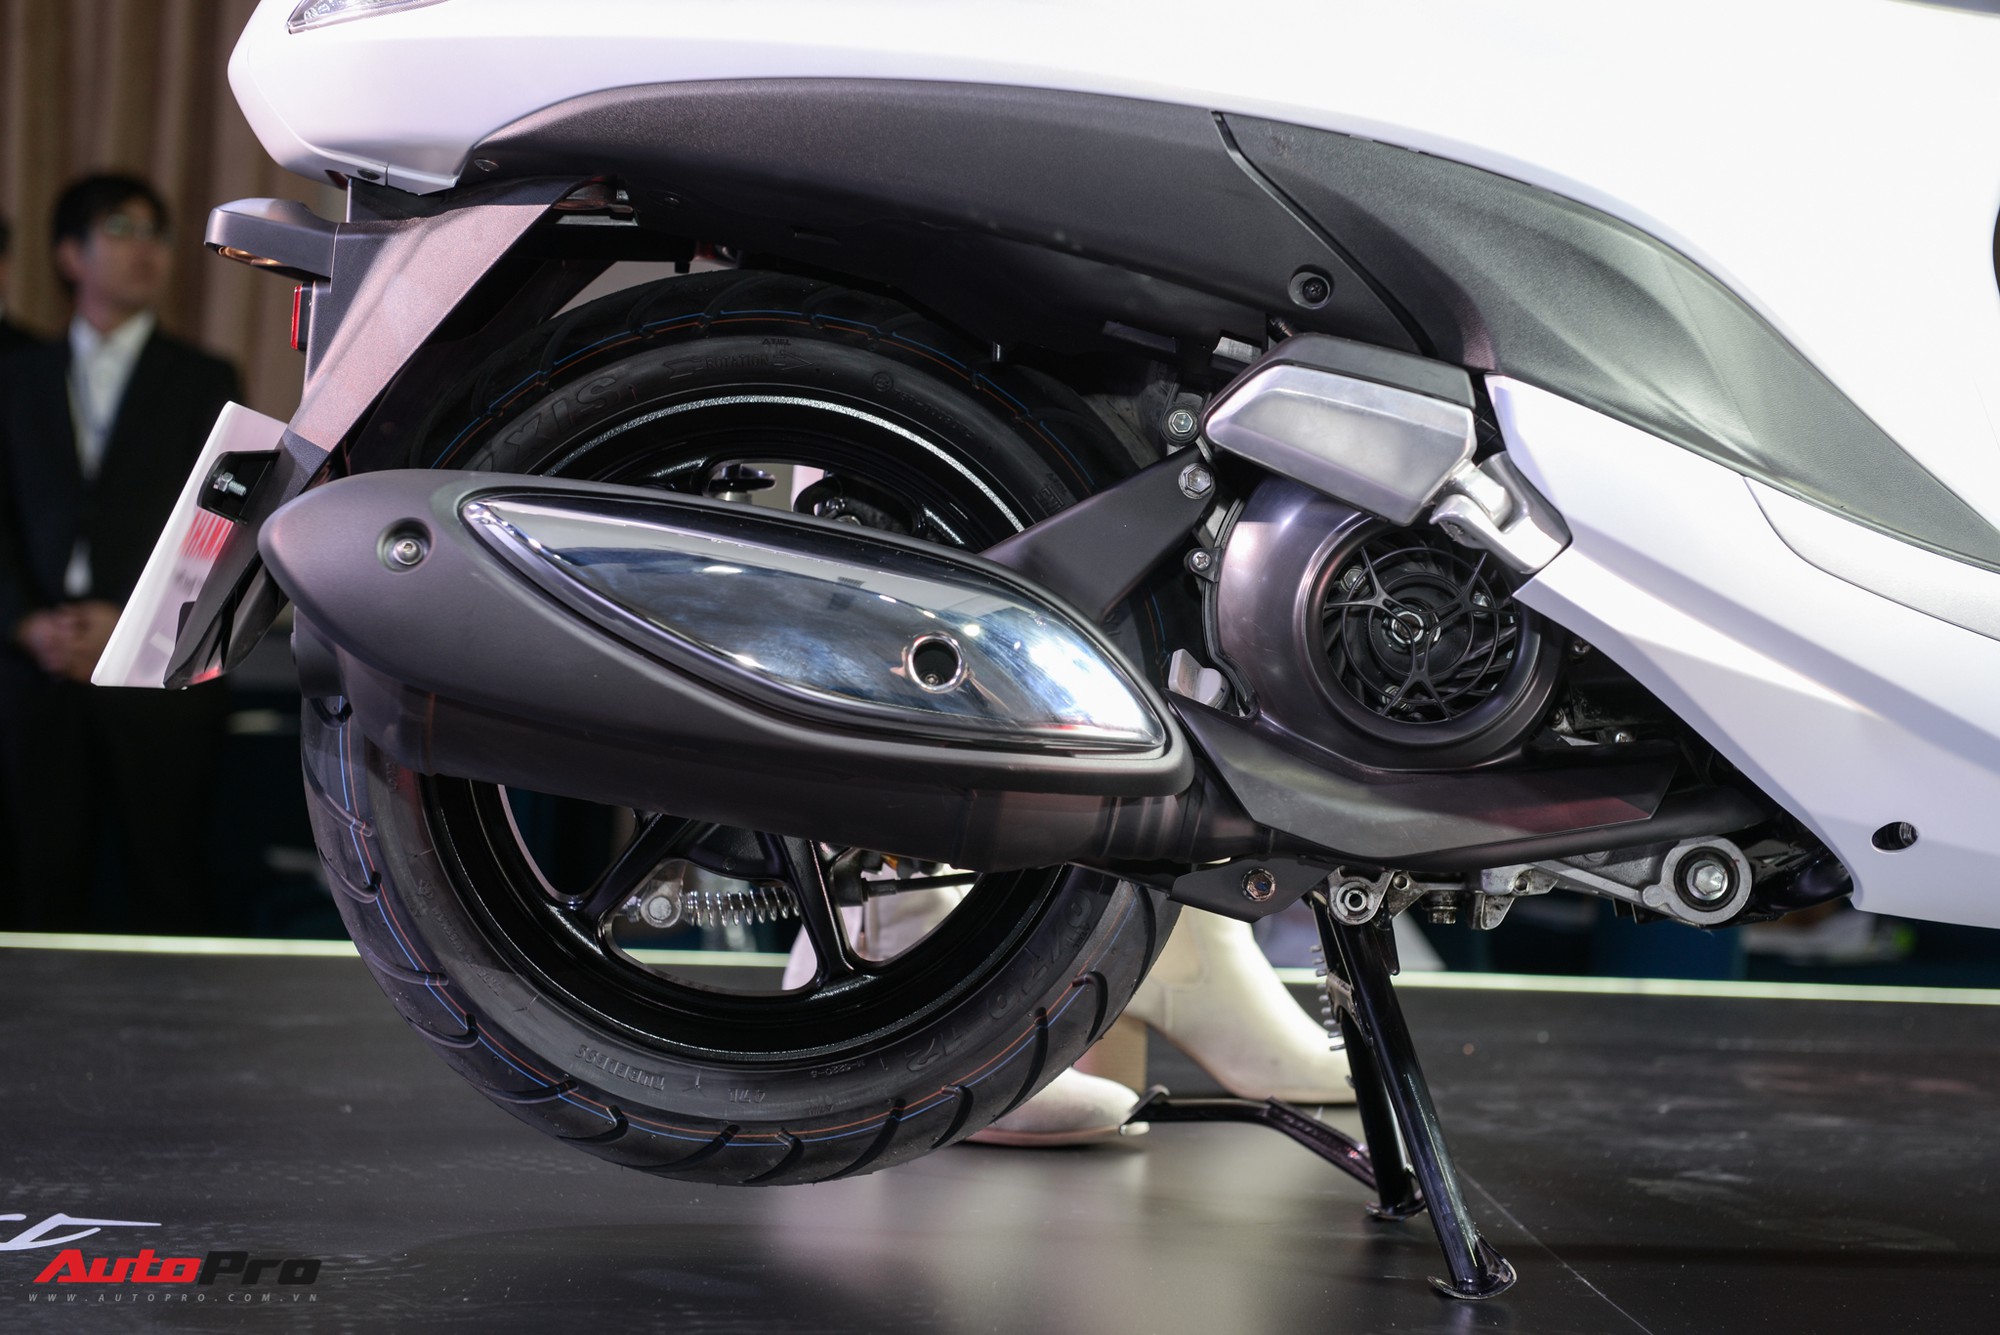 Chi tiết Yamaha Grande Hybrid giá từ 455 triệu đồng tại Việt Nam